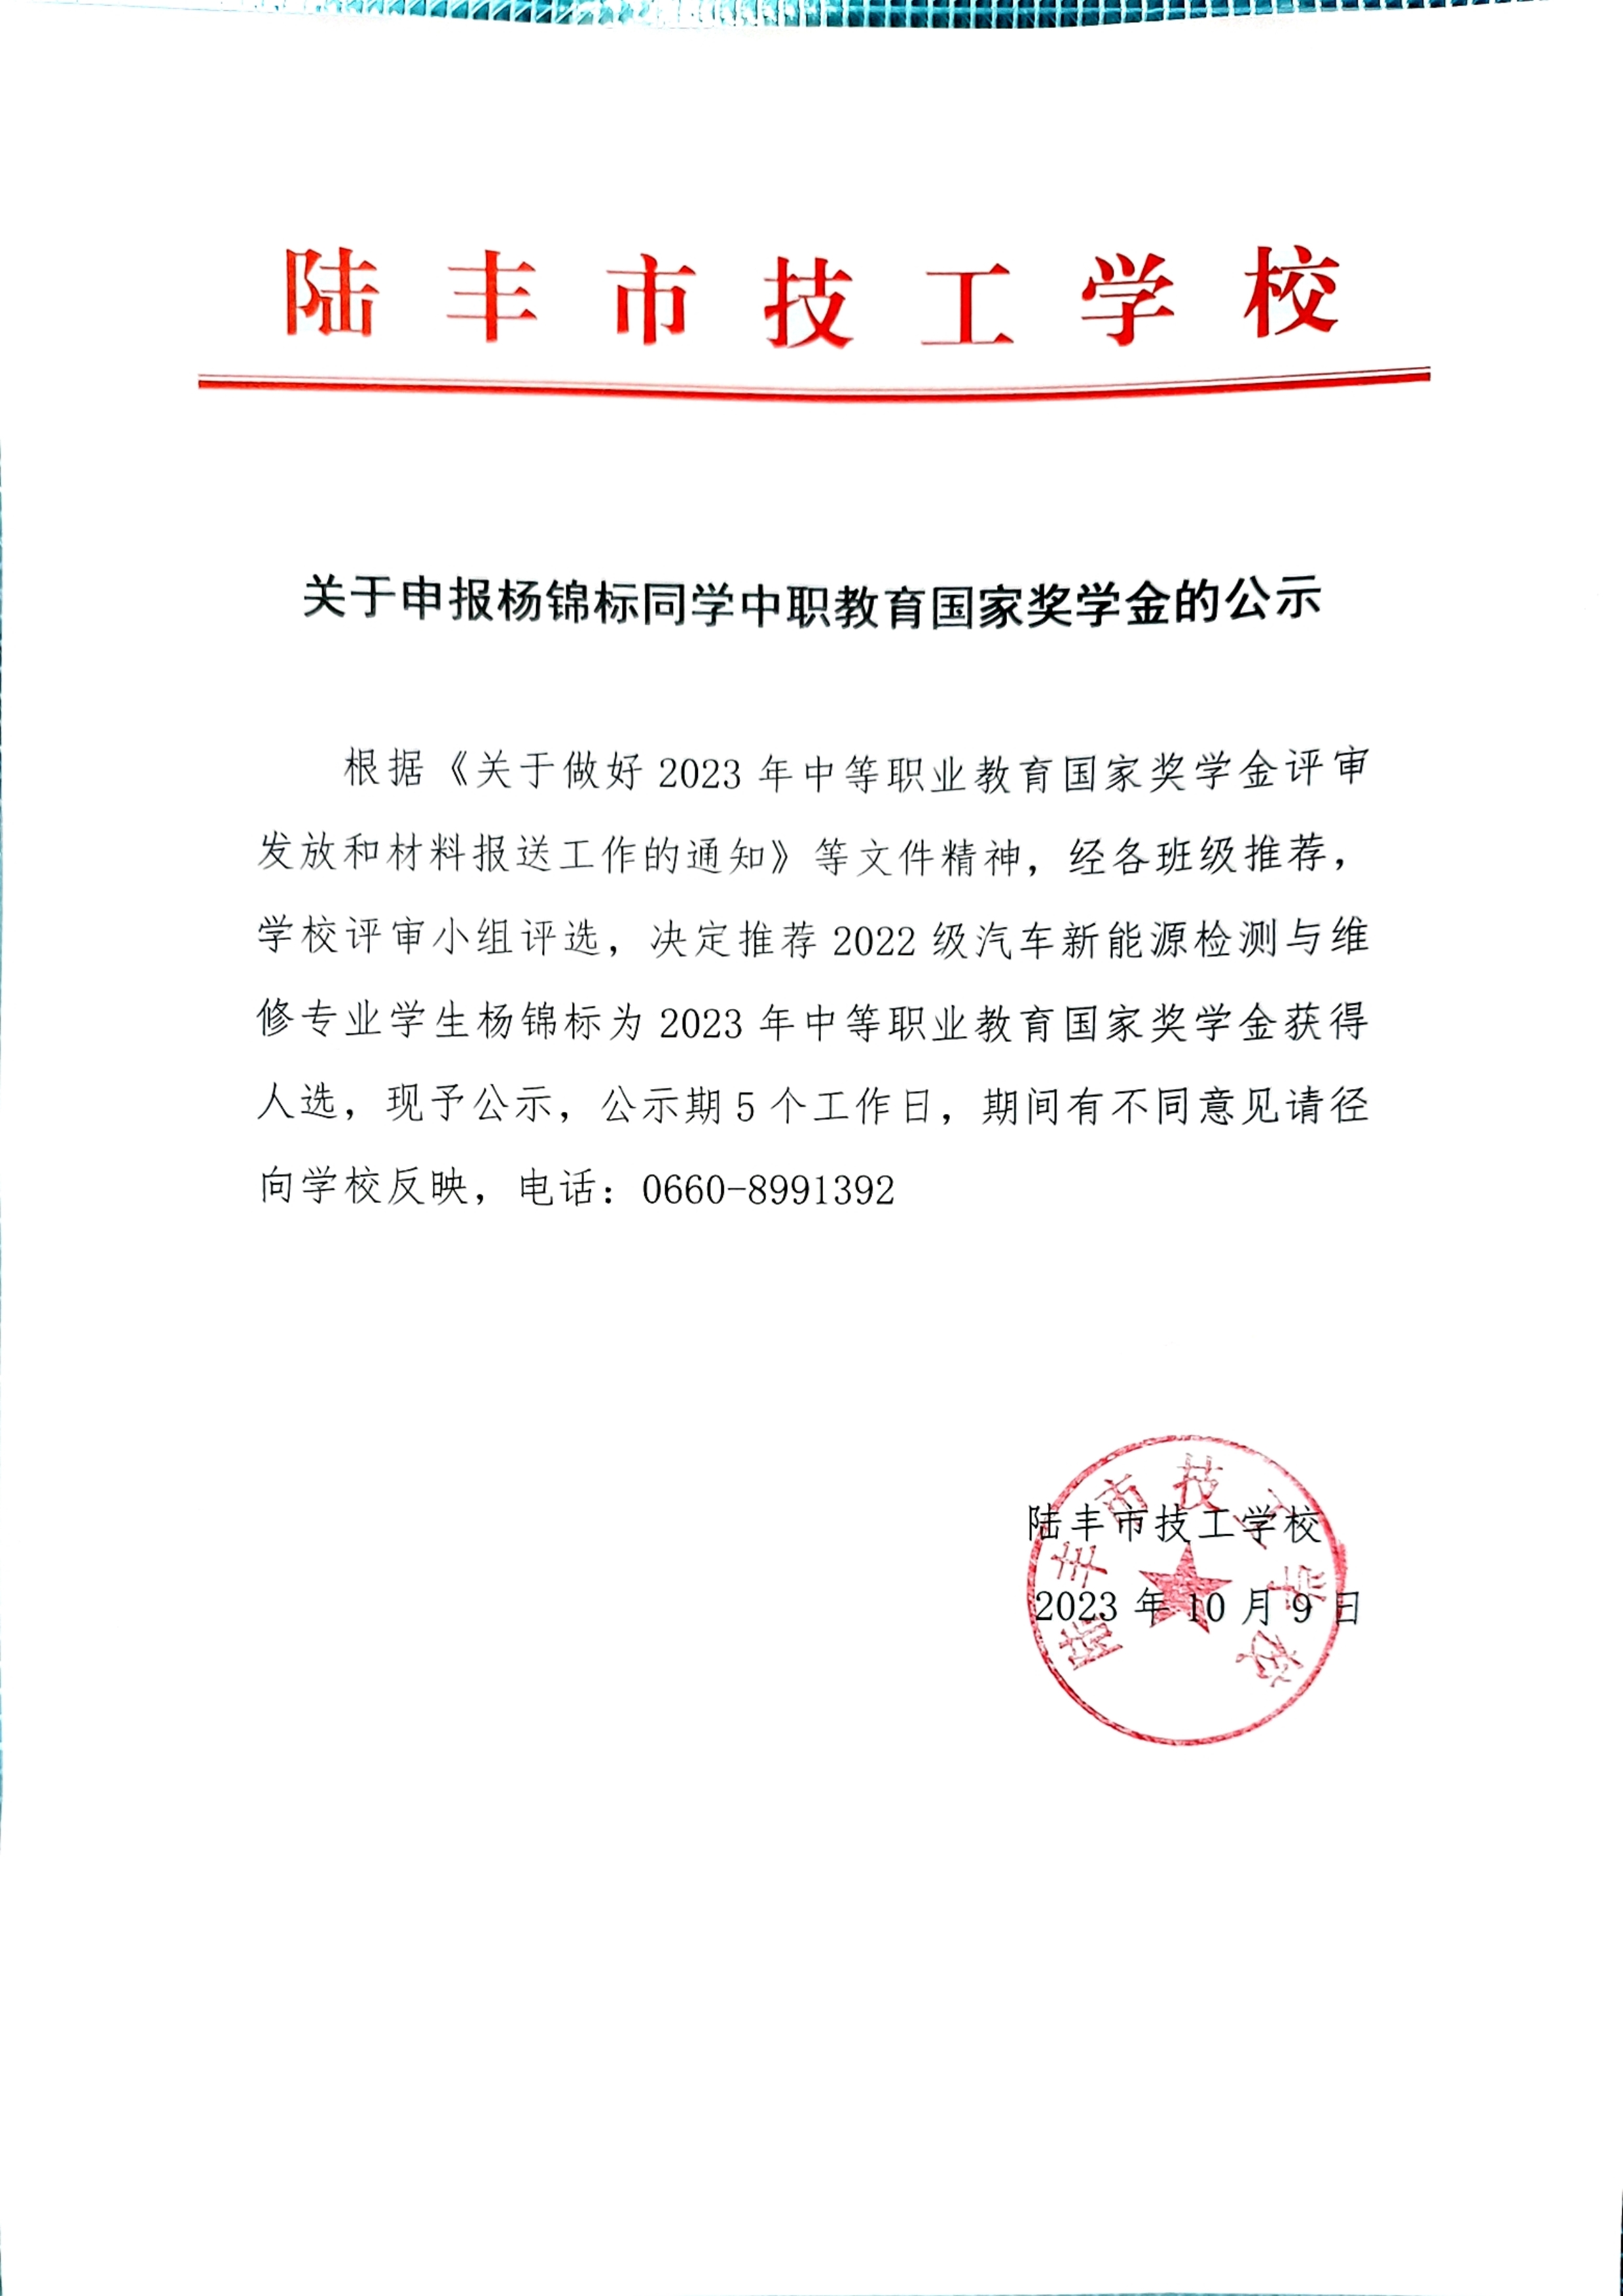 关于申报杨锦标同学中职教育国家奖学金的公示